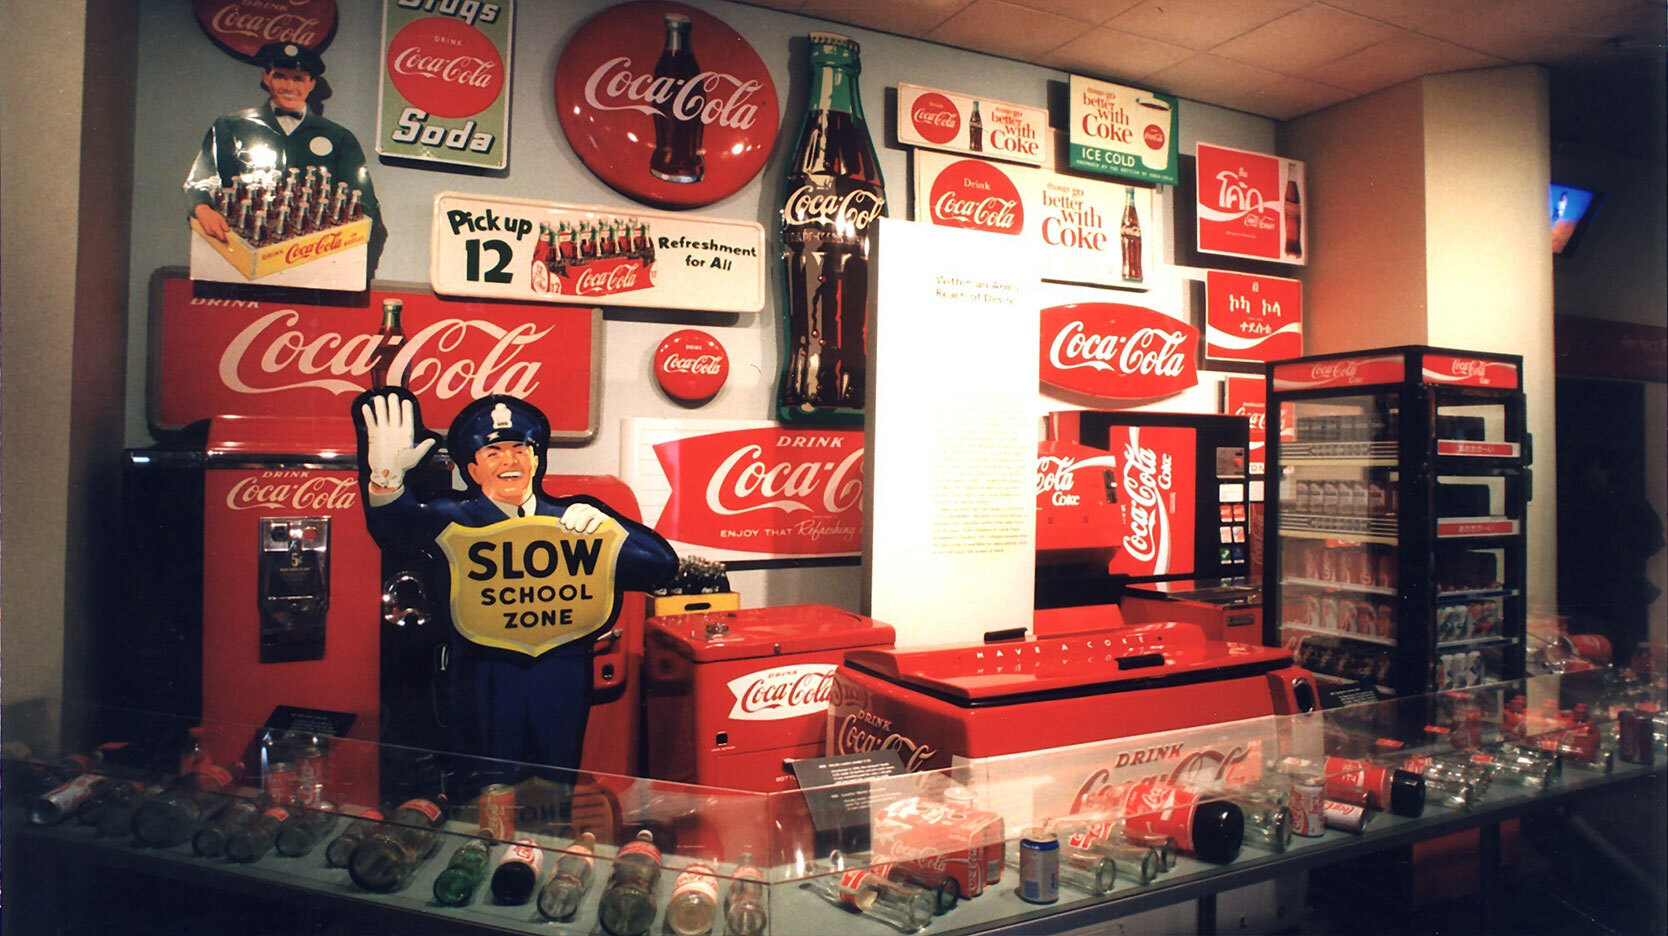 Coca-cola display in museum in Atlanta, Georgia